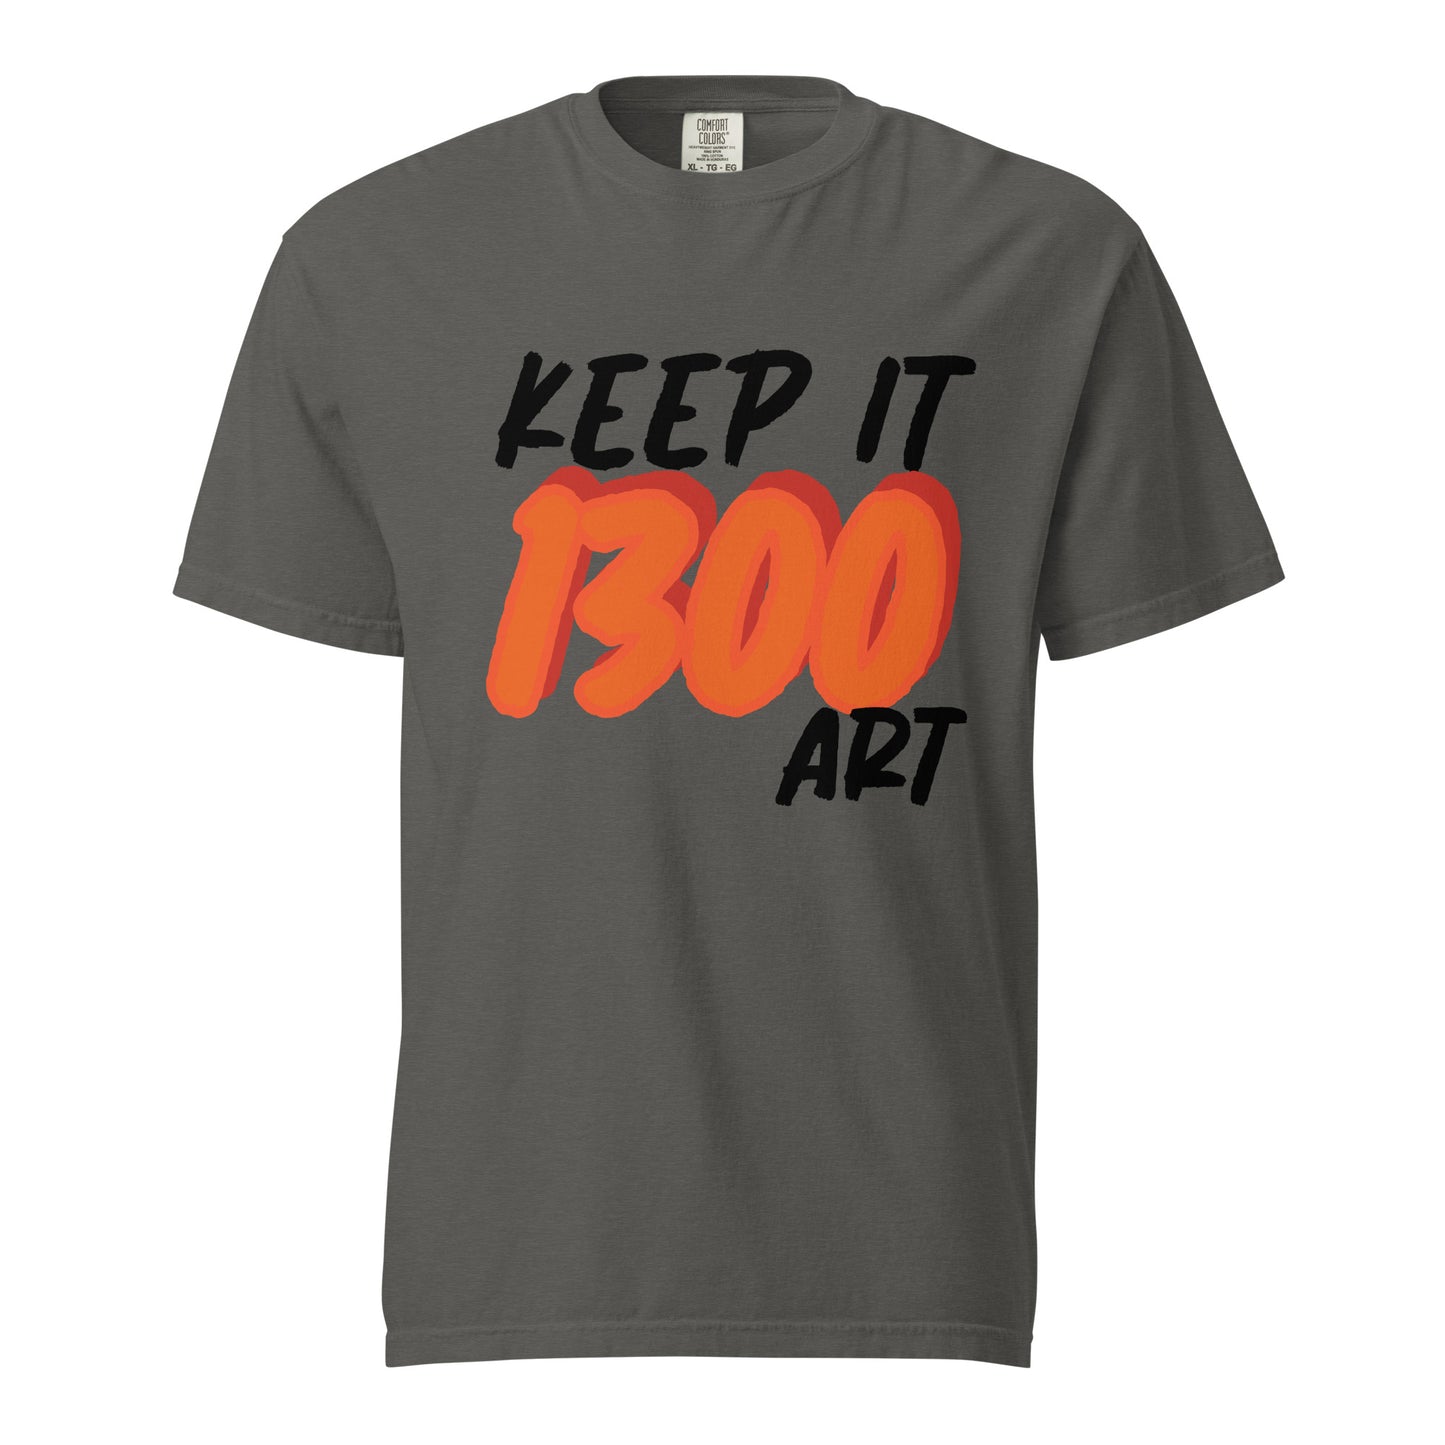 "1300 ART" Unisex heavyweight t-shirt